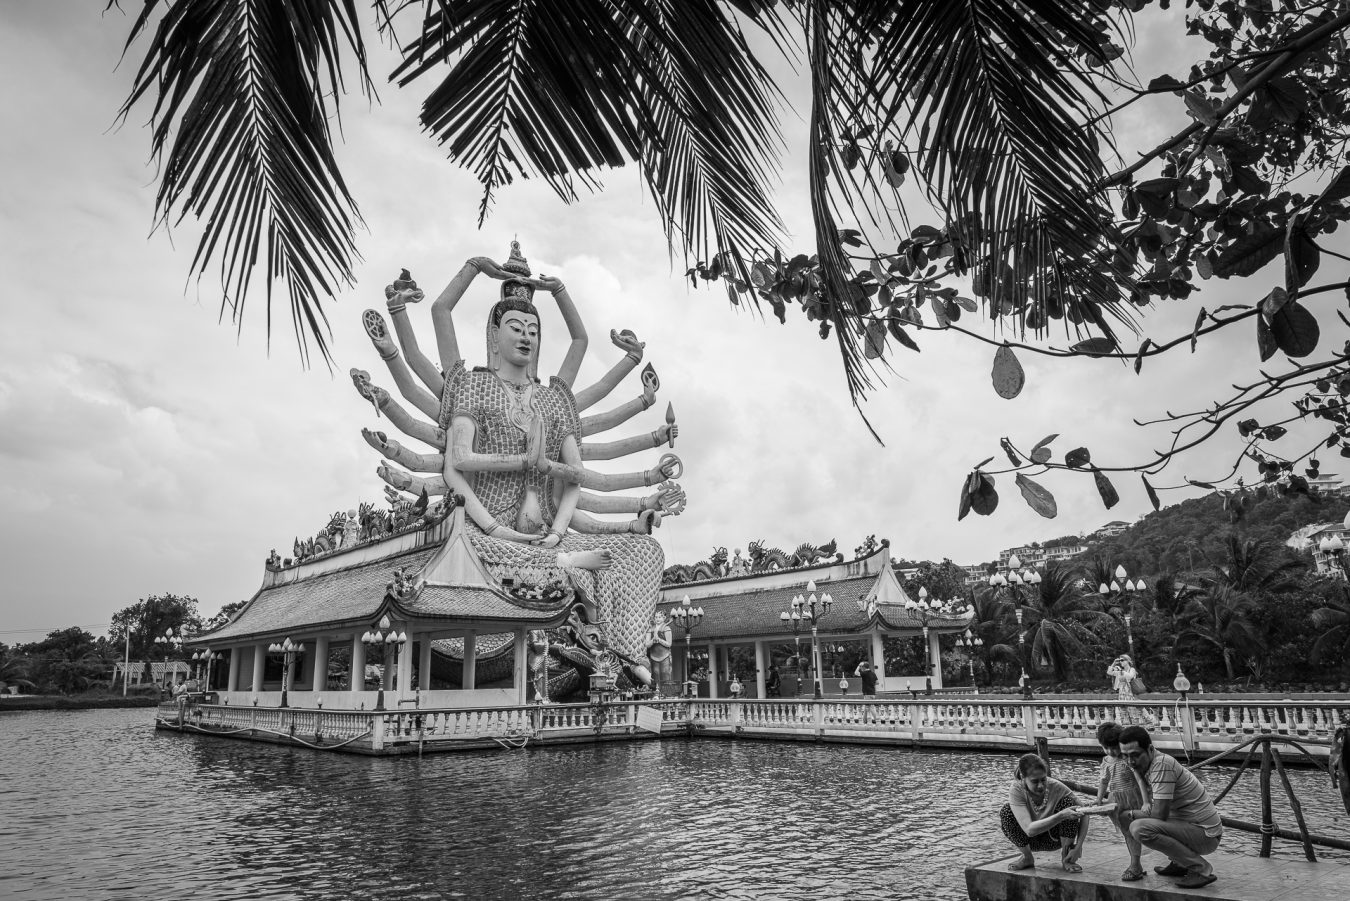 Thailand, Koh Samui - Wat Plai Laem